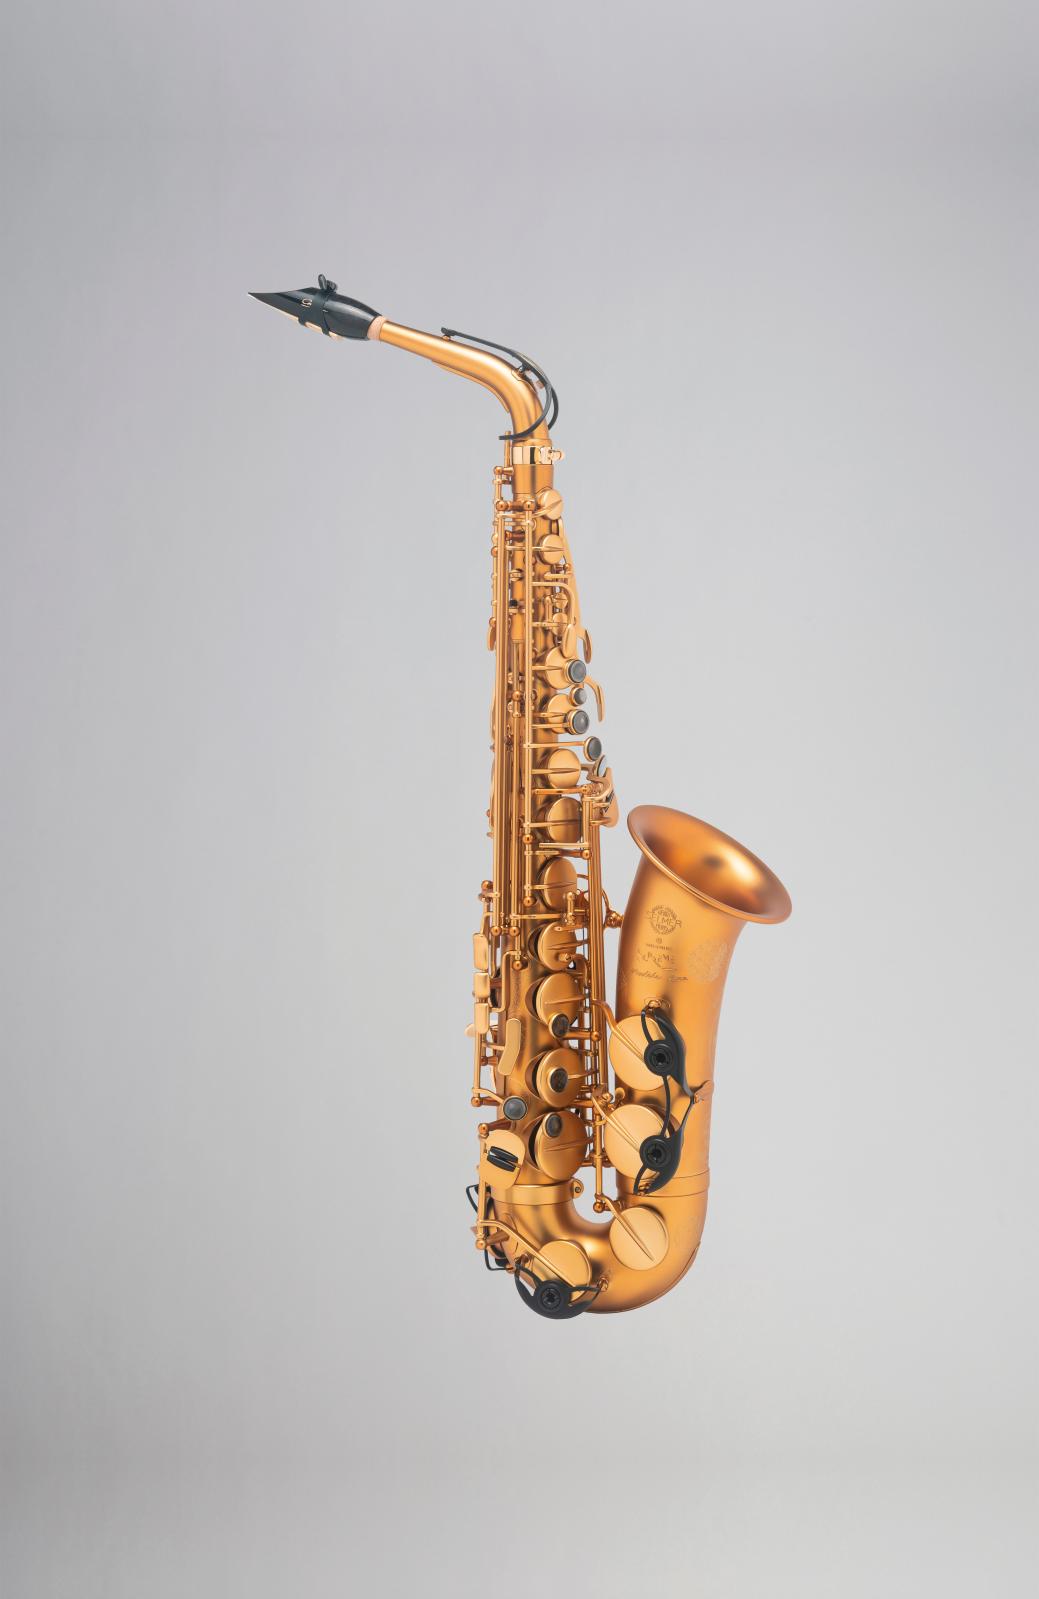 Le Saxo Selmer fête ses 100 ans avec un instrument exceptionnel